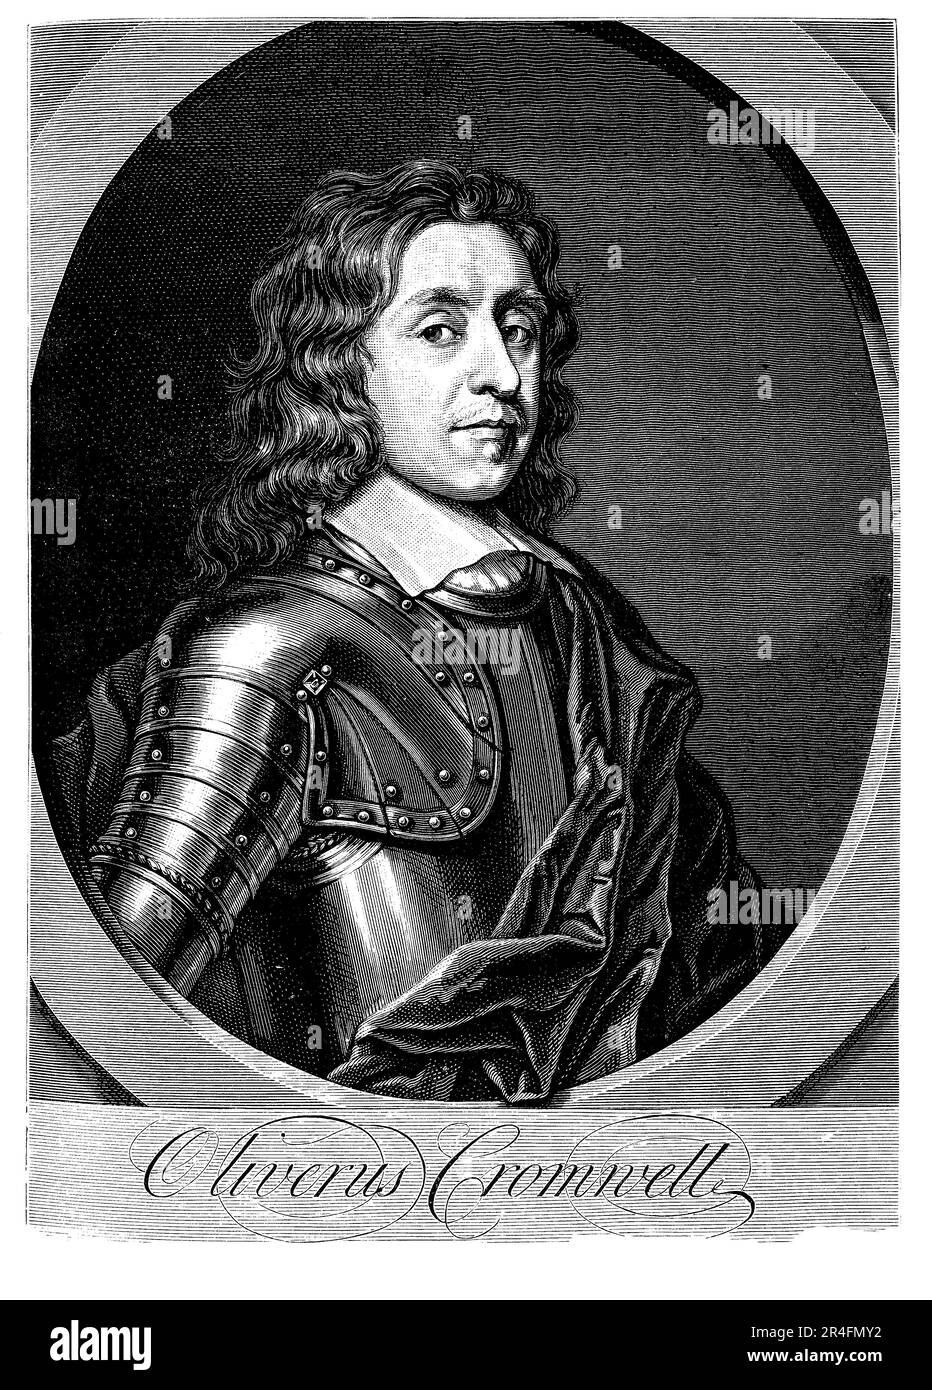 Oliver Cromwell war ein englischer Militärführer und Politiker des 17. Jahrhunderts, der eine Schlüsselrolle im Englischen Bürgerkrieg und der darauf folgenden Commonwealth-Zeit spielte. Er war Puritaner und führte die parlamentarische Armee zum Sieg gegen die Royalisten. Er wurde Lord Protector von England, Schottland und Irland nach der Hinrichtung von König Karl I. und herrschte als De-facto-Diktator bis zu seinem Tod. Seine Herrschaft war geprägt von religiöser Toleranz, militärischer Expansion und der Unterdrückung von Meinungsverschiedenheiten. Er ist als eine der wichtigsten Persönlichkeiten der englischen Geschichte und als Symbol in Erinnerung Stockfoto